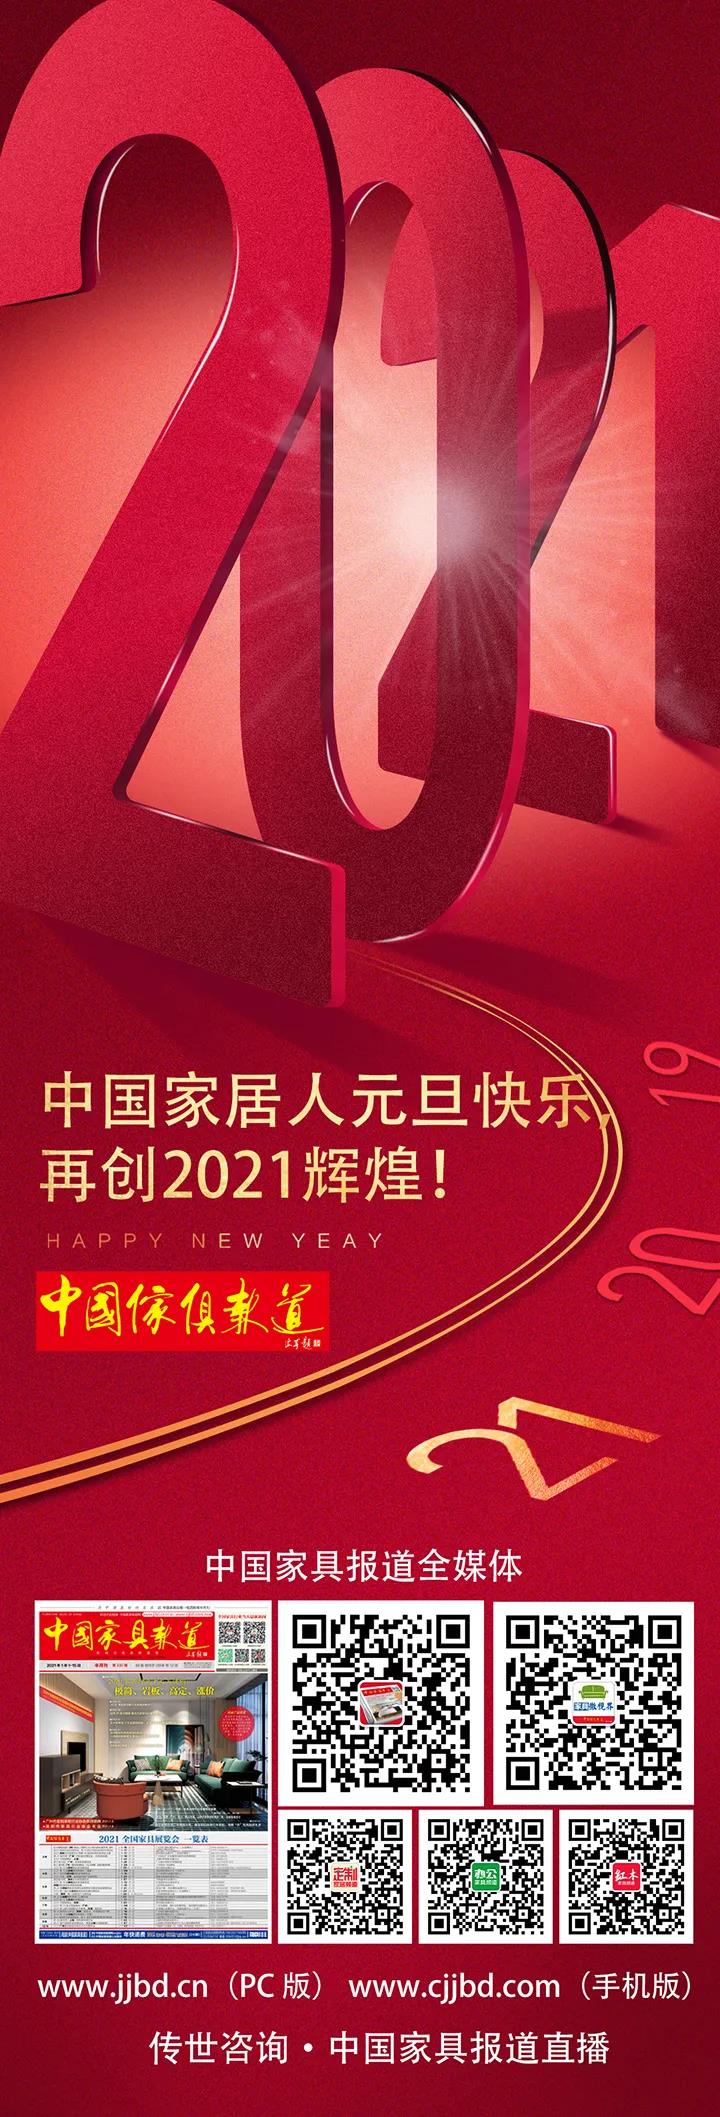 中国家居人元旦快乐,再创2021辉煌!